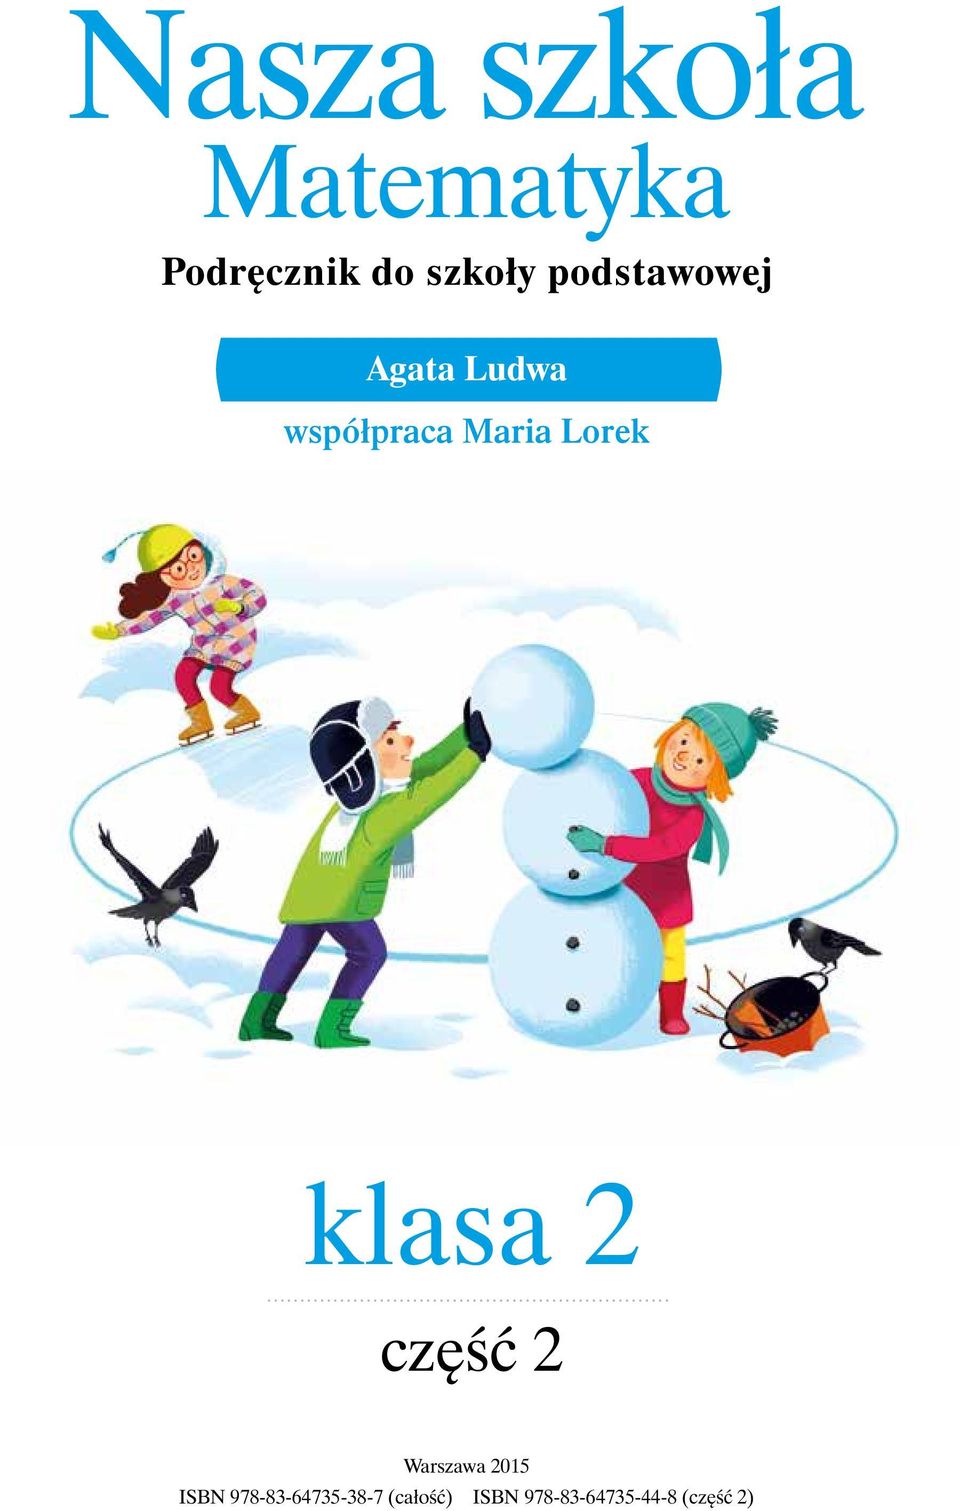 klasa 2 część 2 Warszawa 2015 ISBN